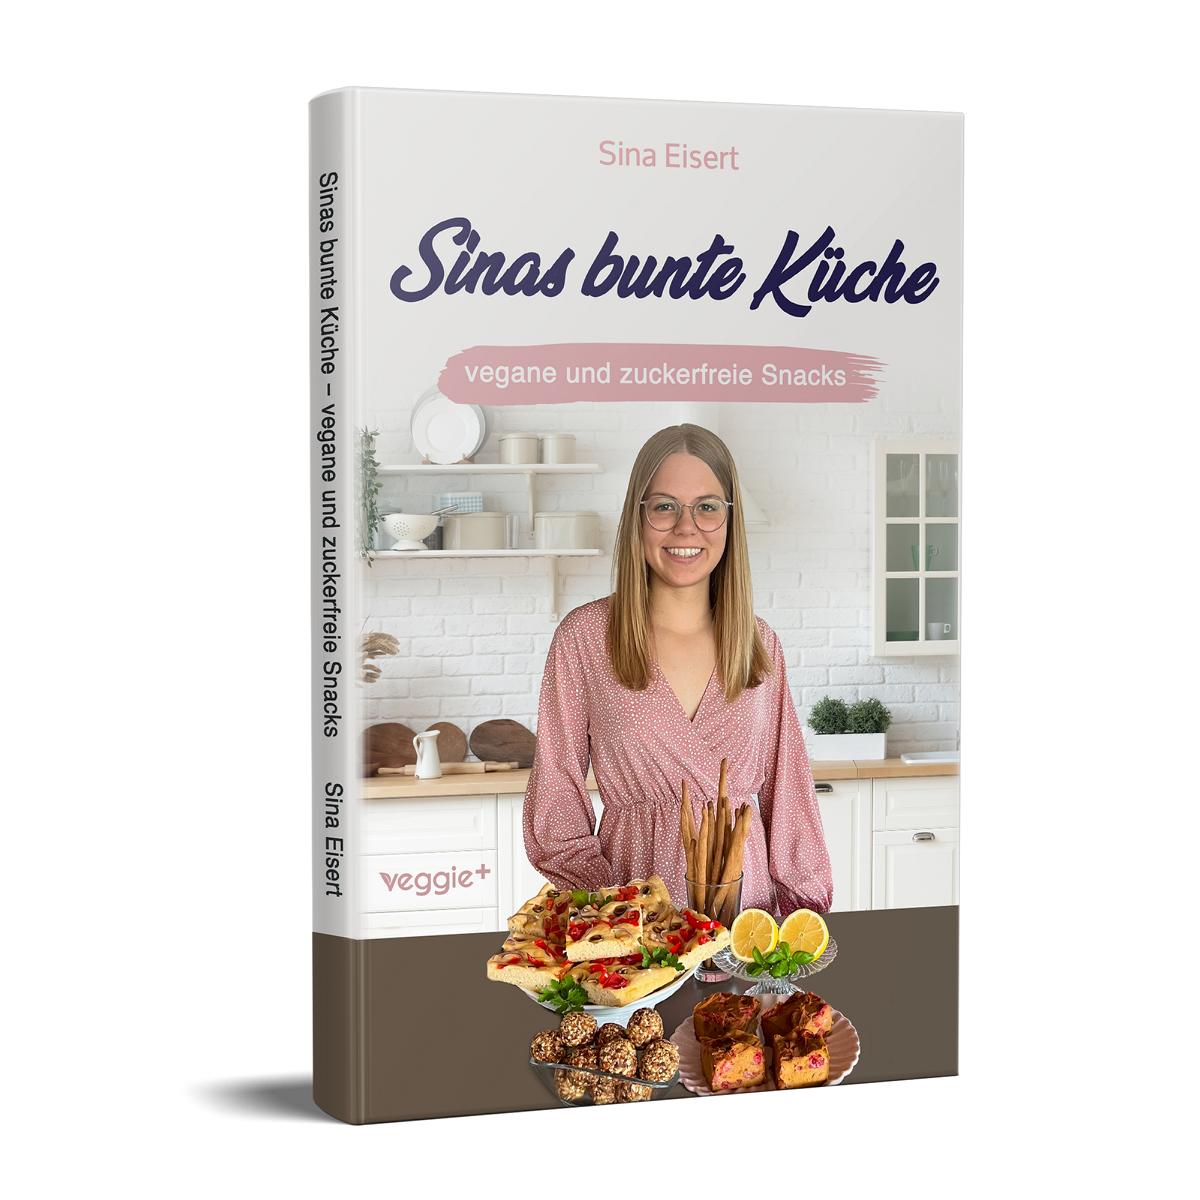 Sinas bunte Küche – vegane und zuckerfreie Snacks: Das große Kochbuch mit 60 veganen Snack-Rezepten ohne Zucker für eine gesunde Ernährung von Sina Eisert im veggie + Verlag